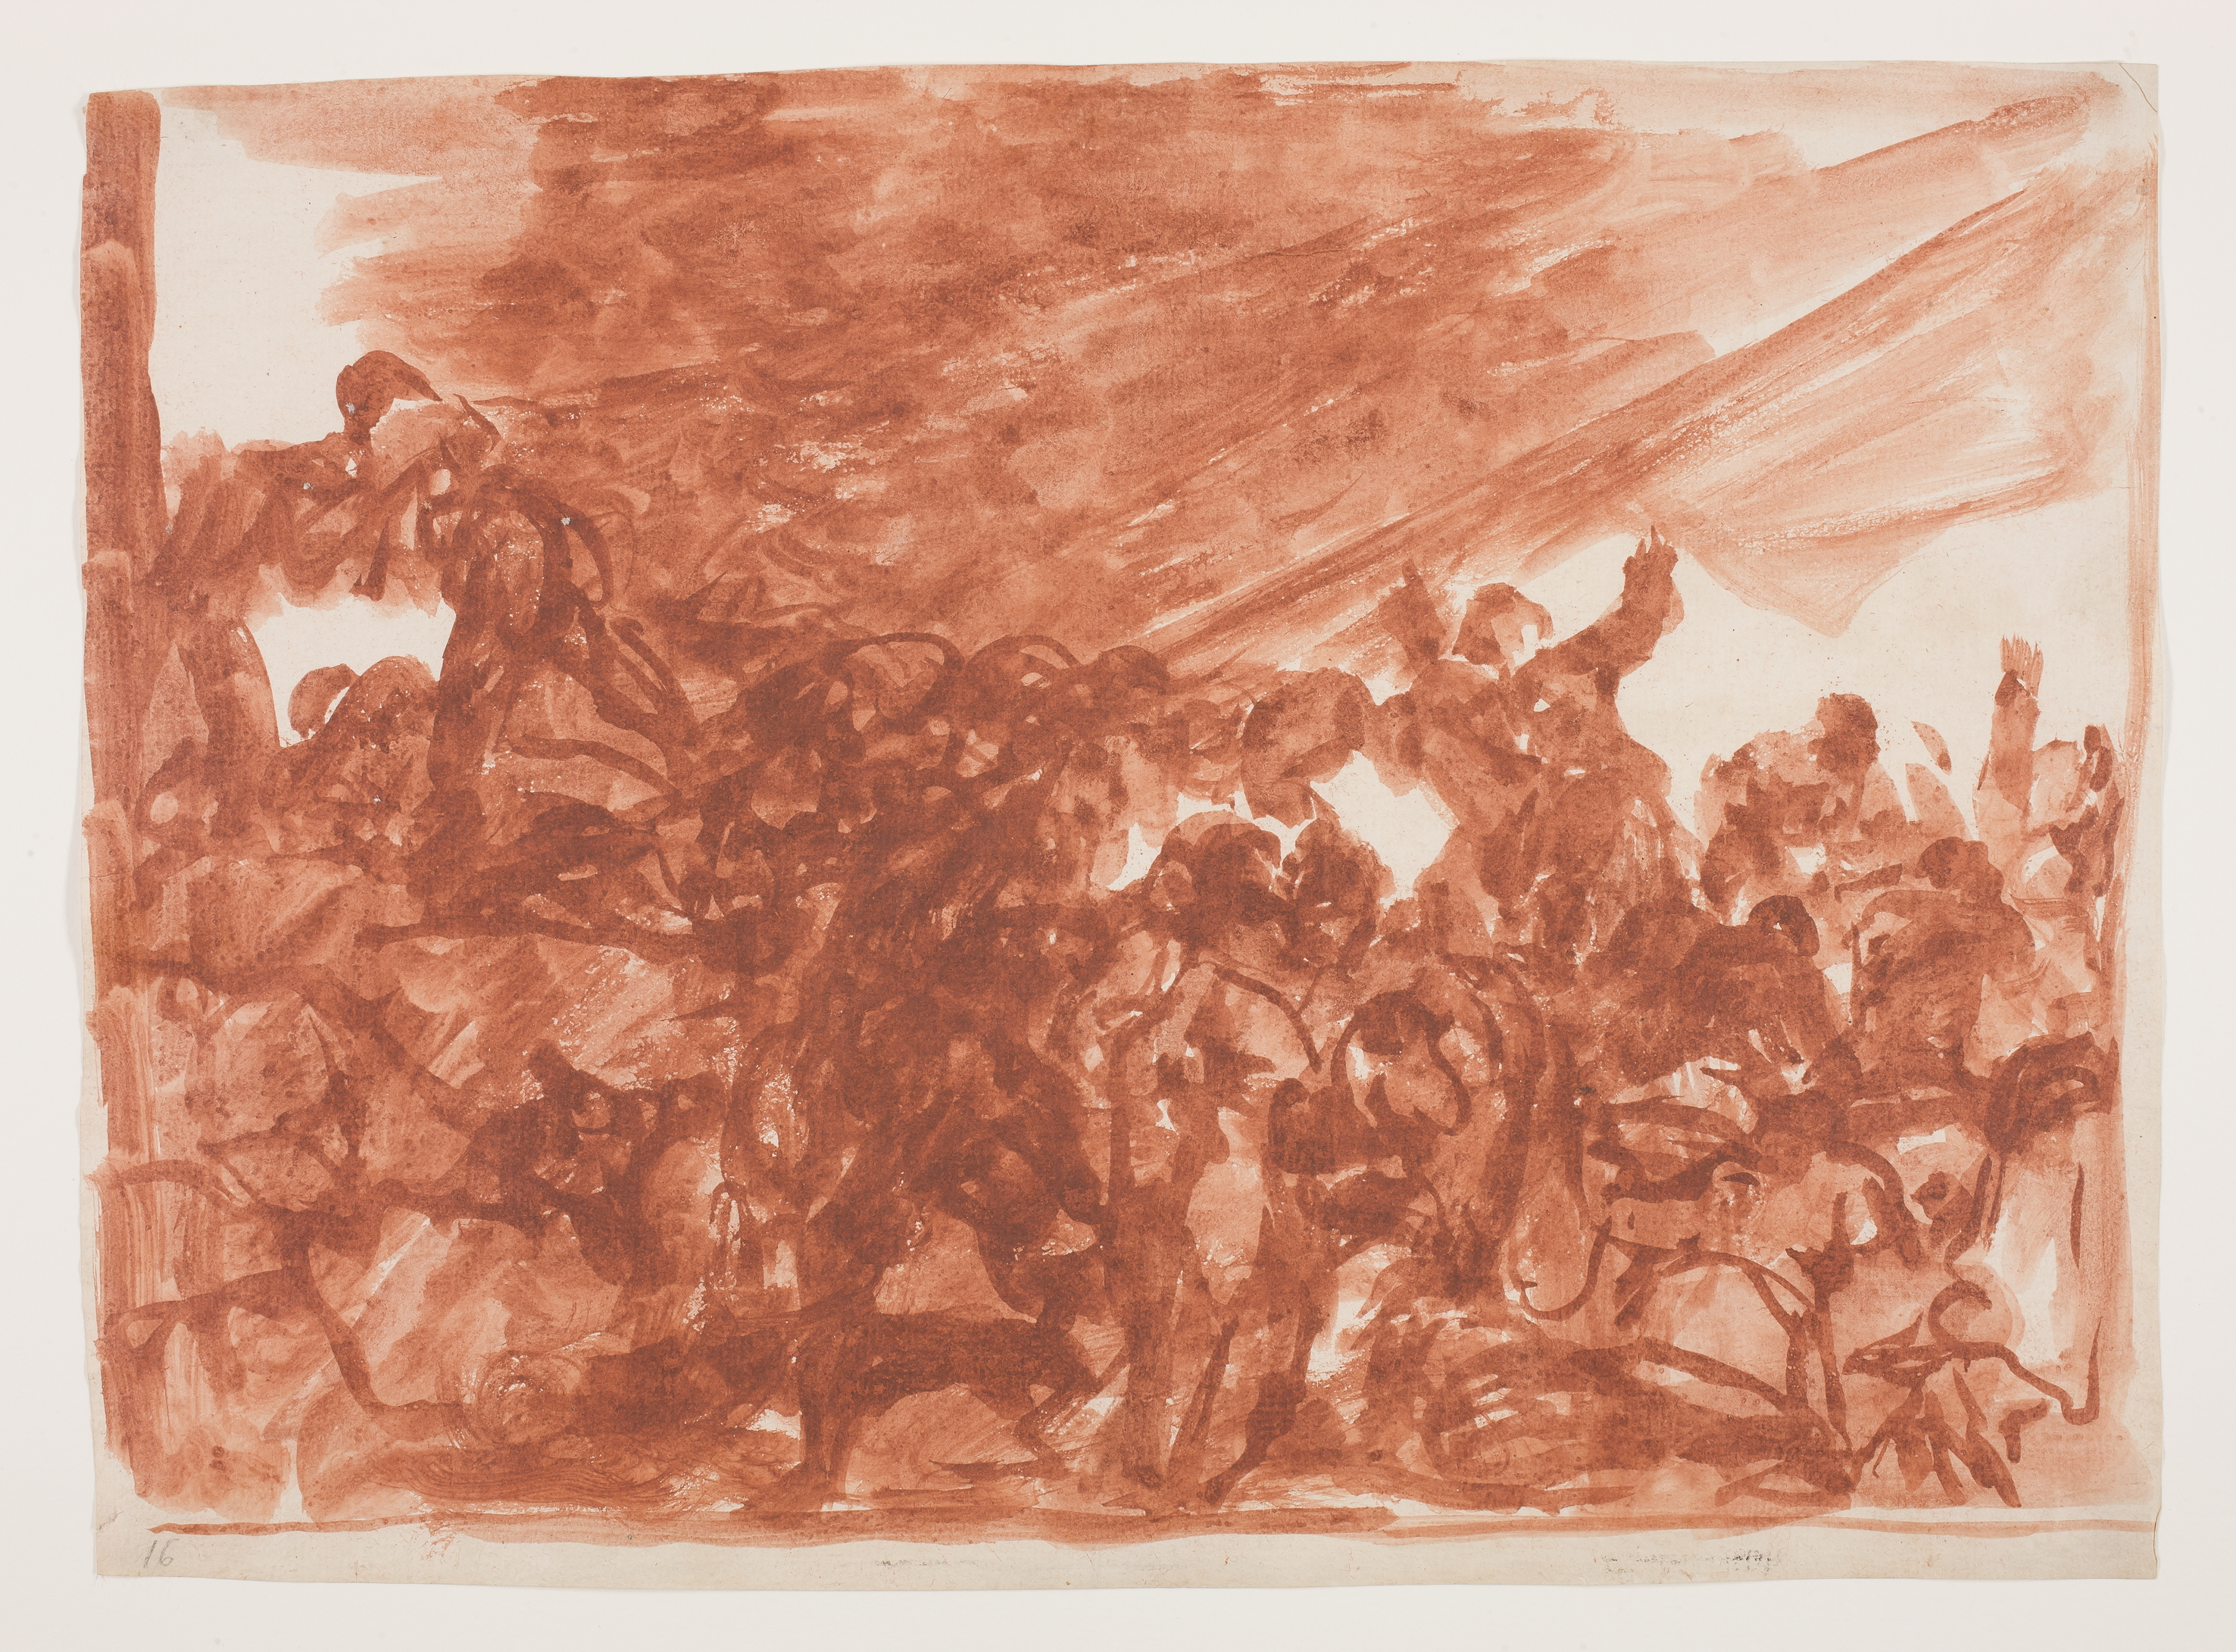 Goya, Disparate claro, 1815 (sketch)